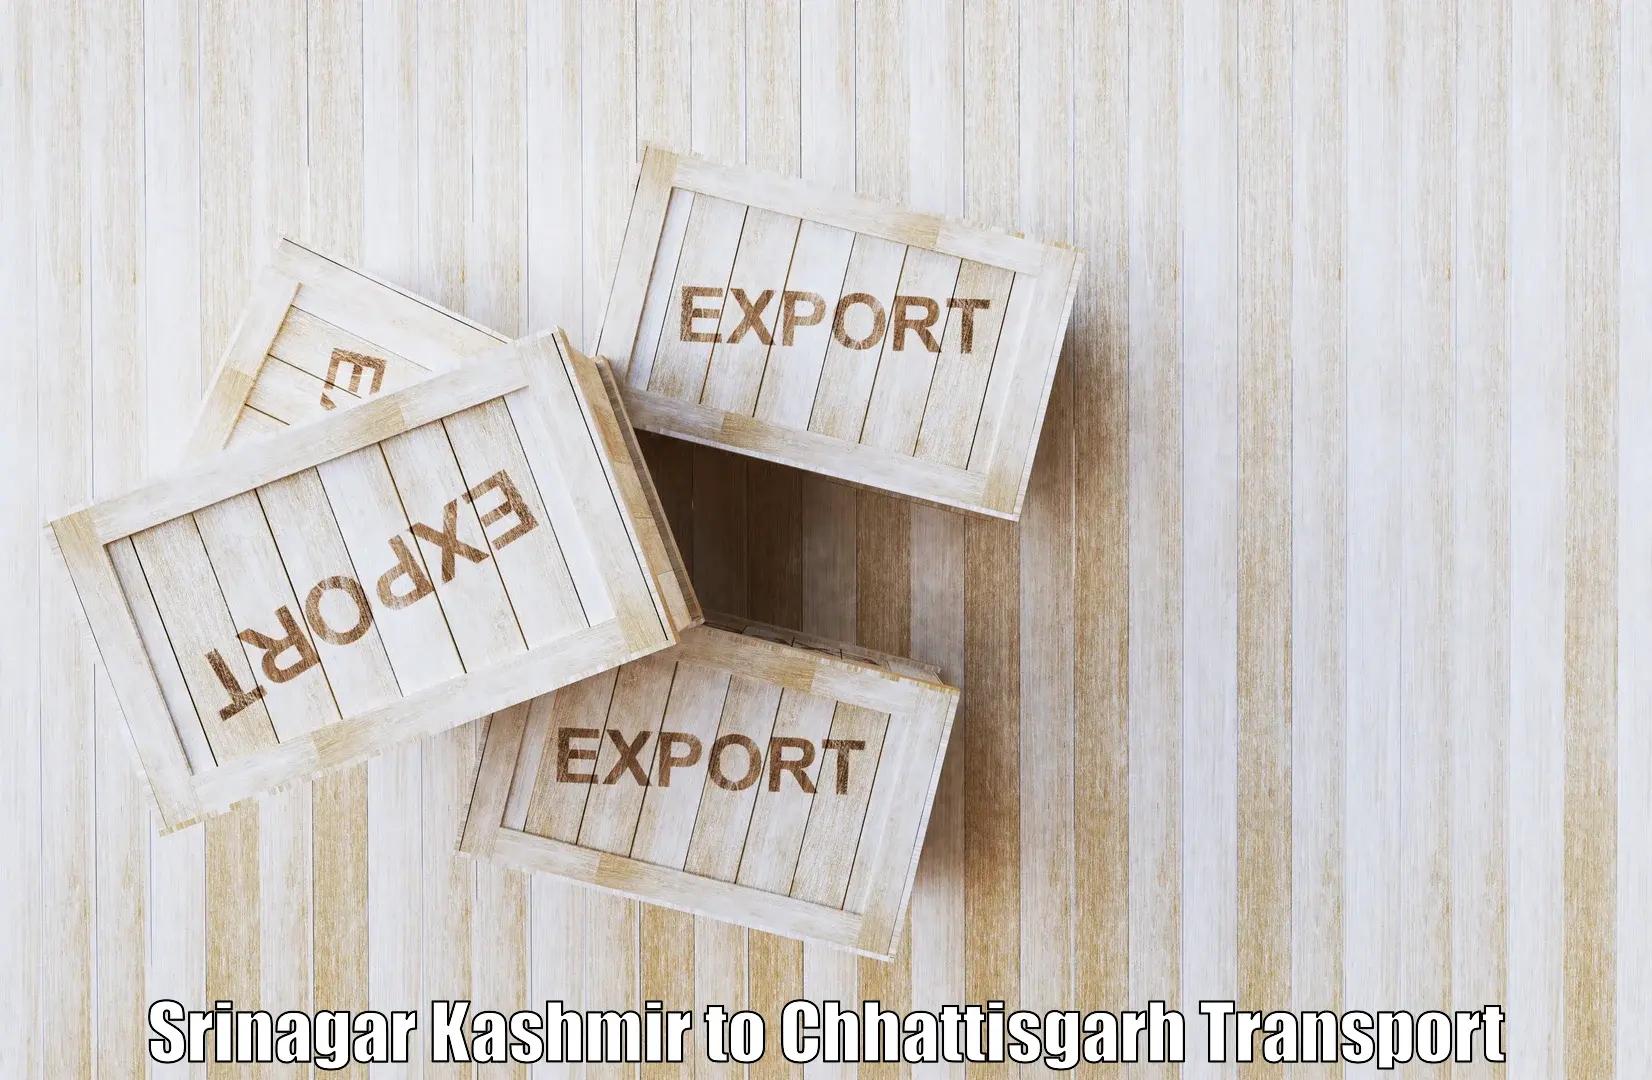 Air freight transport services Srinagar Kashmir to Khairagarh